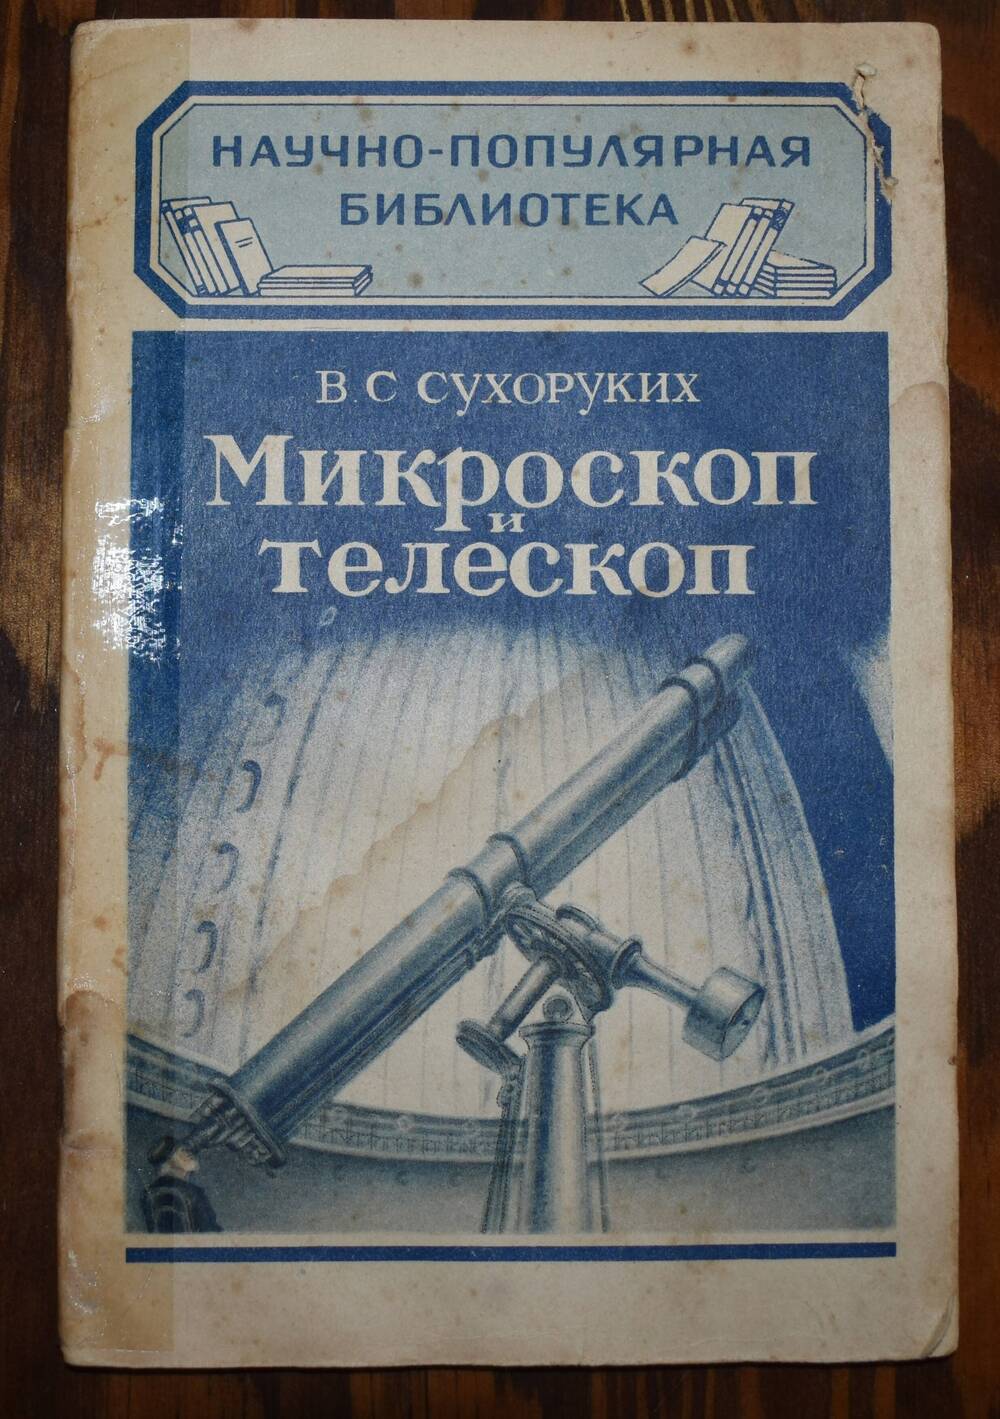 Сухоруких В.С. Микроскоп и телескоп.